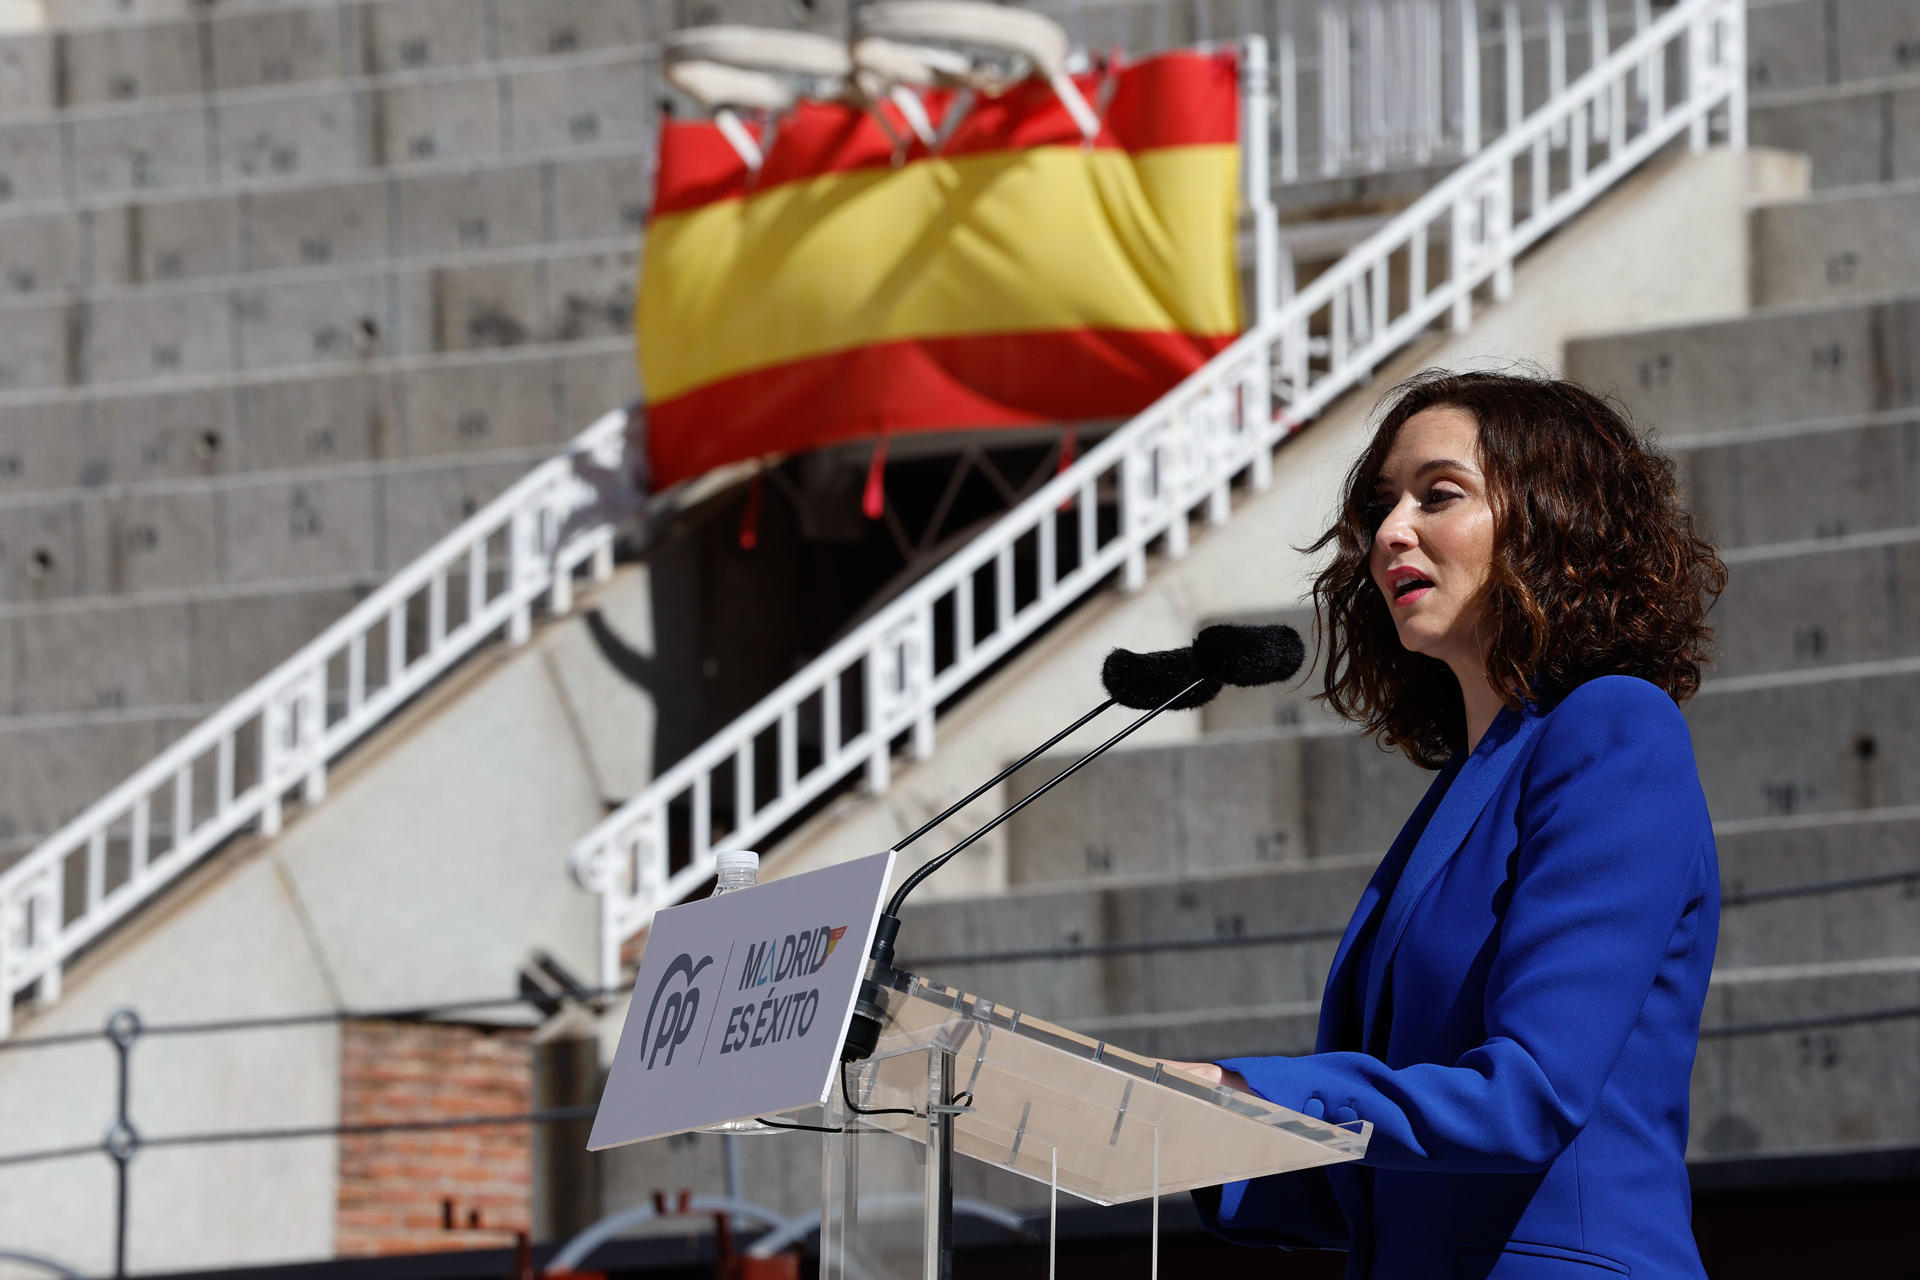 Imagen de archivo de la presidenta de la comunidad de Madrid, Isabel Díaz Ayuso, que cierra de forma simbólica la lista del PP a la Alcaldía de Bilbao en los próximos comicios del 28 de mayo. EFE/ Chema Moya